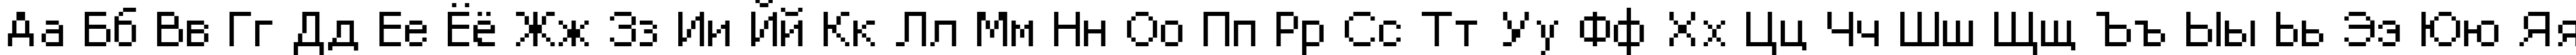 Пример написания русского алфавита шрифтом DPix_8pt